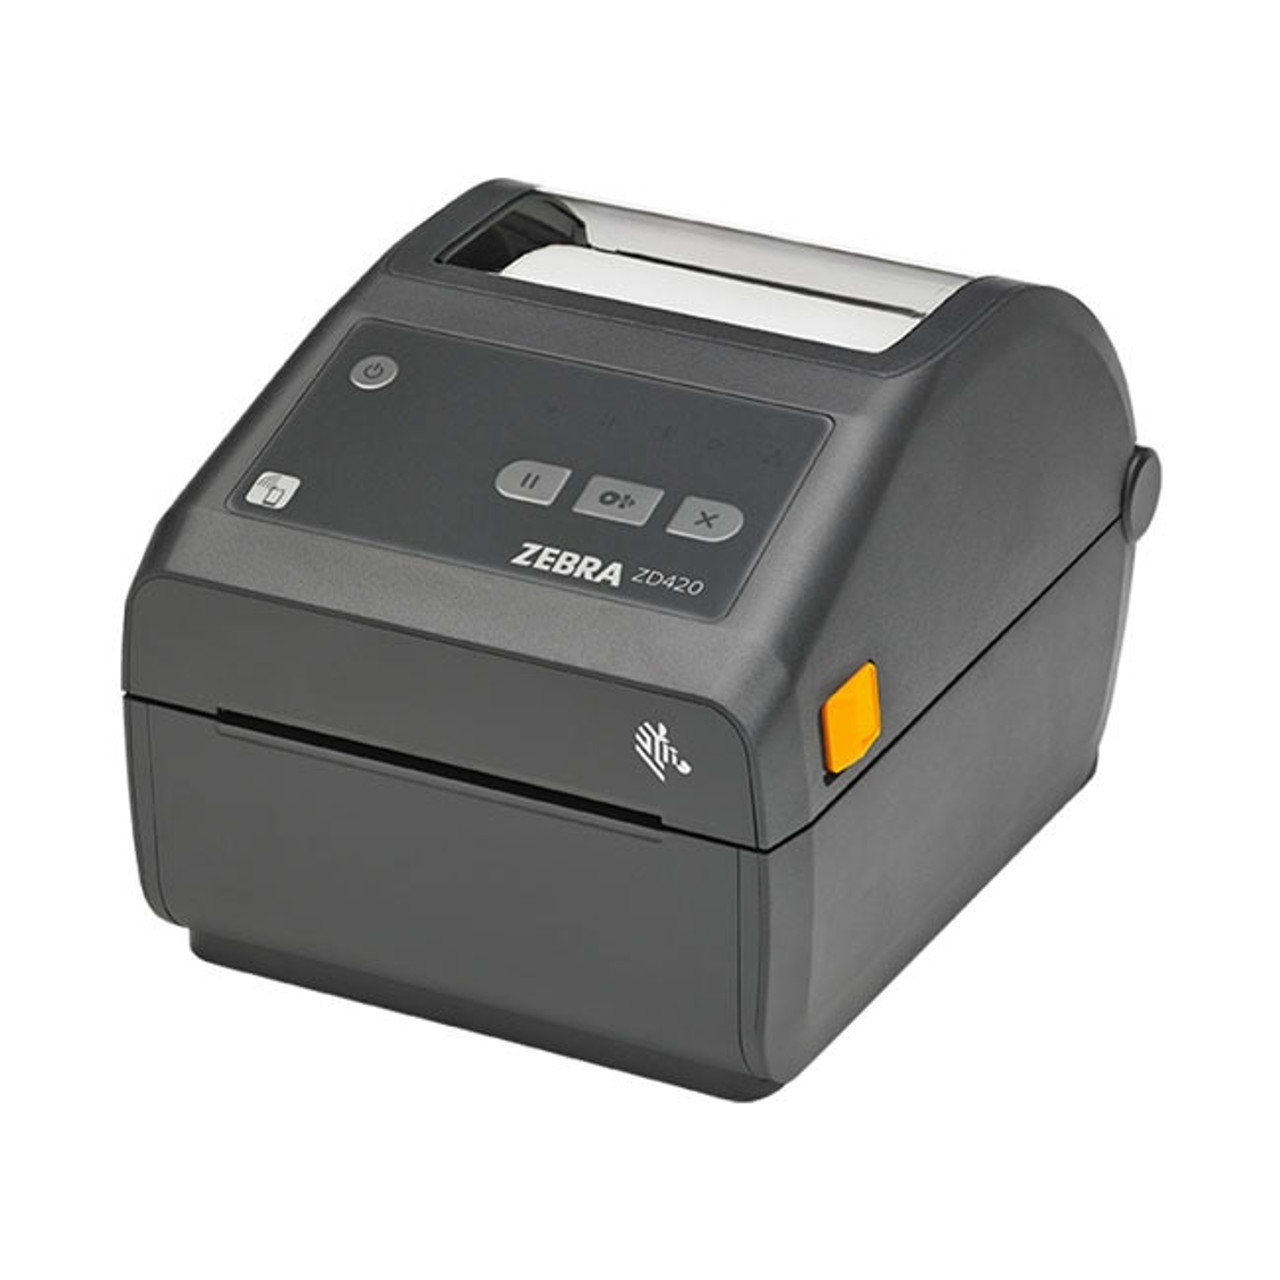 Zebra Zd420 Direct Thermal Desktop Printer Label Printers Australia 2892